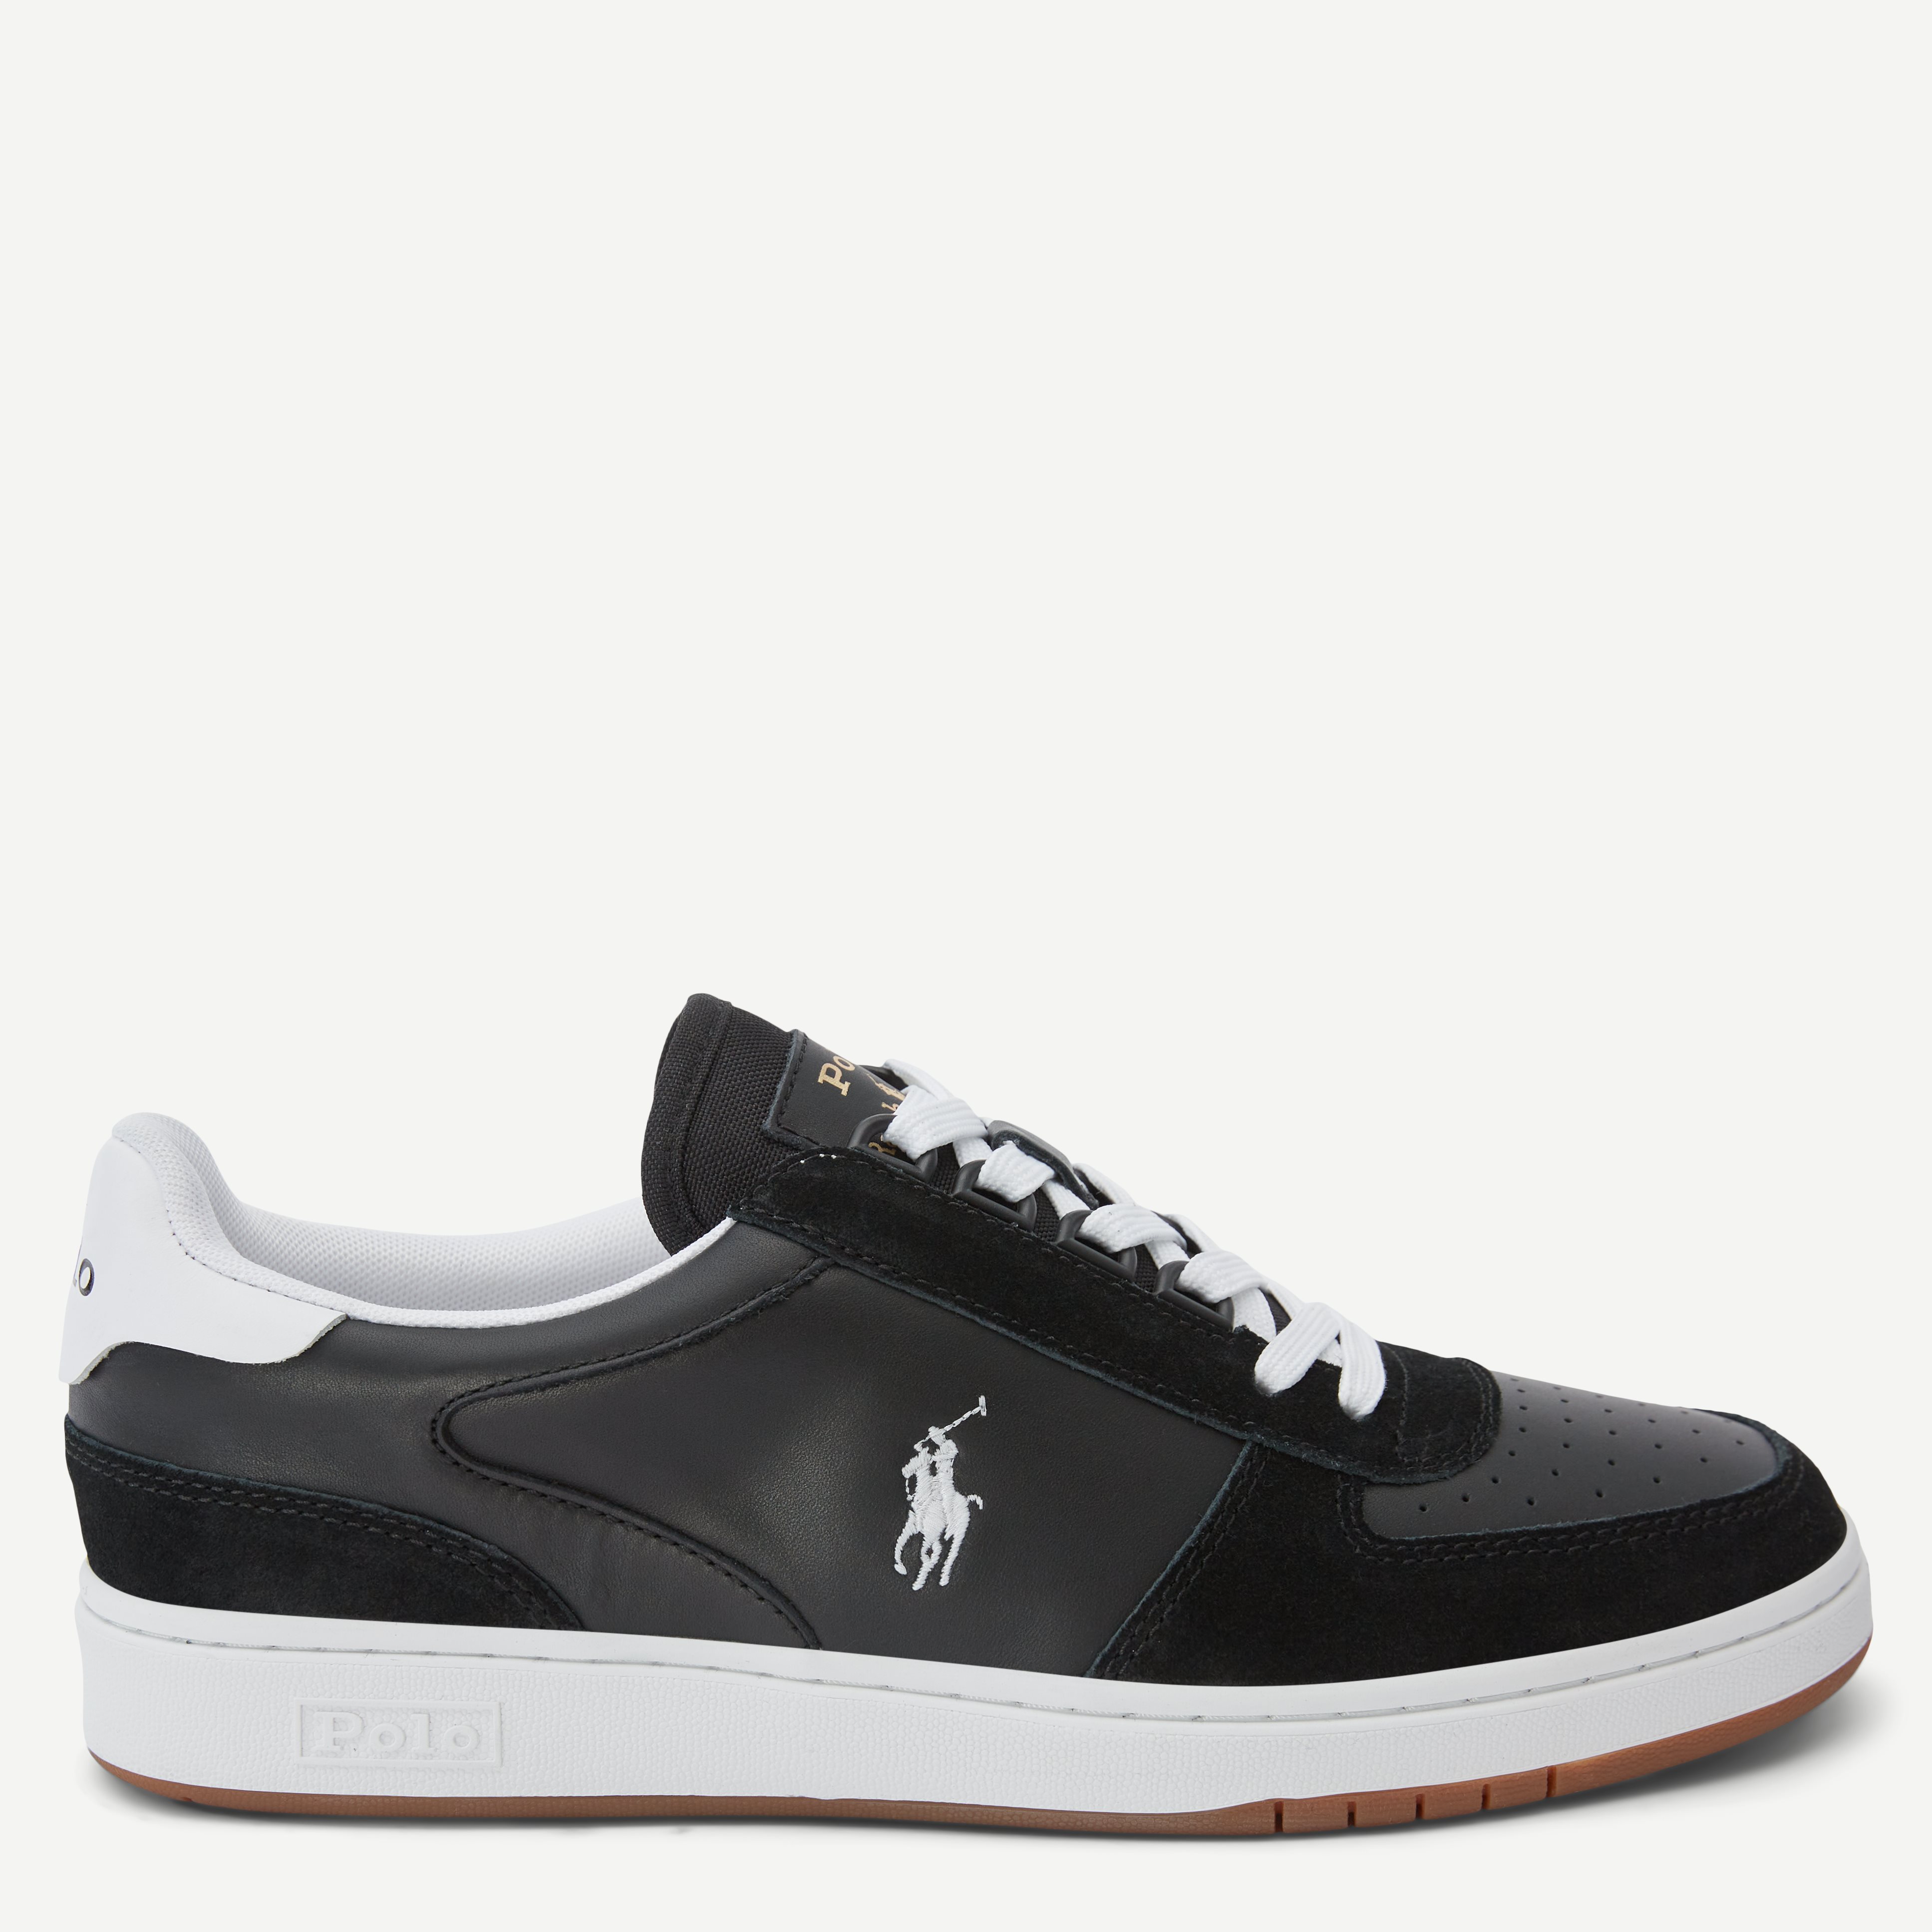 Polo Ralph Lauren Shoes 809834463 Black